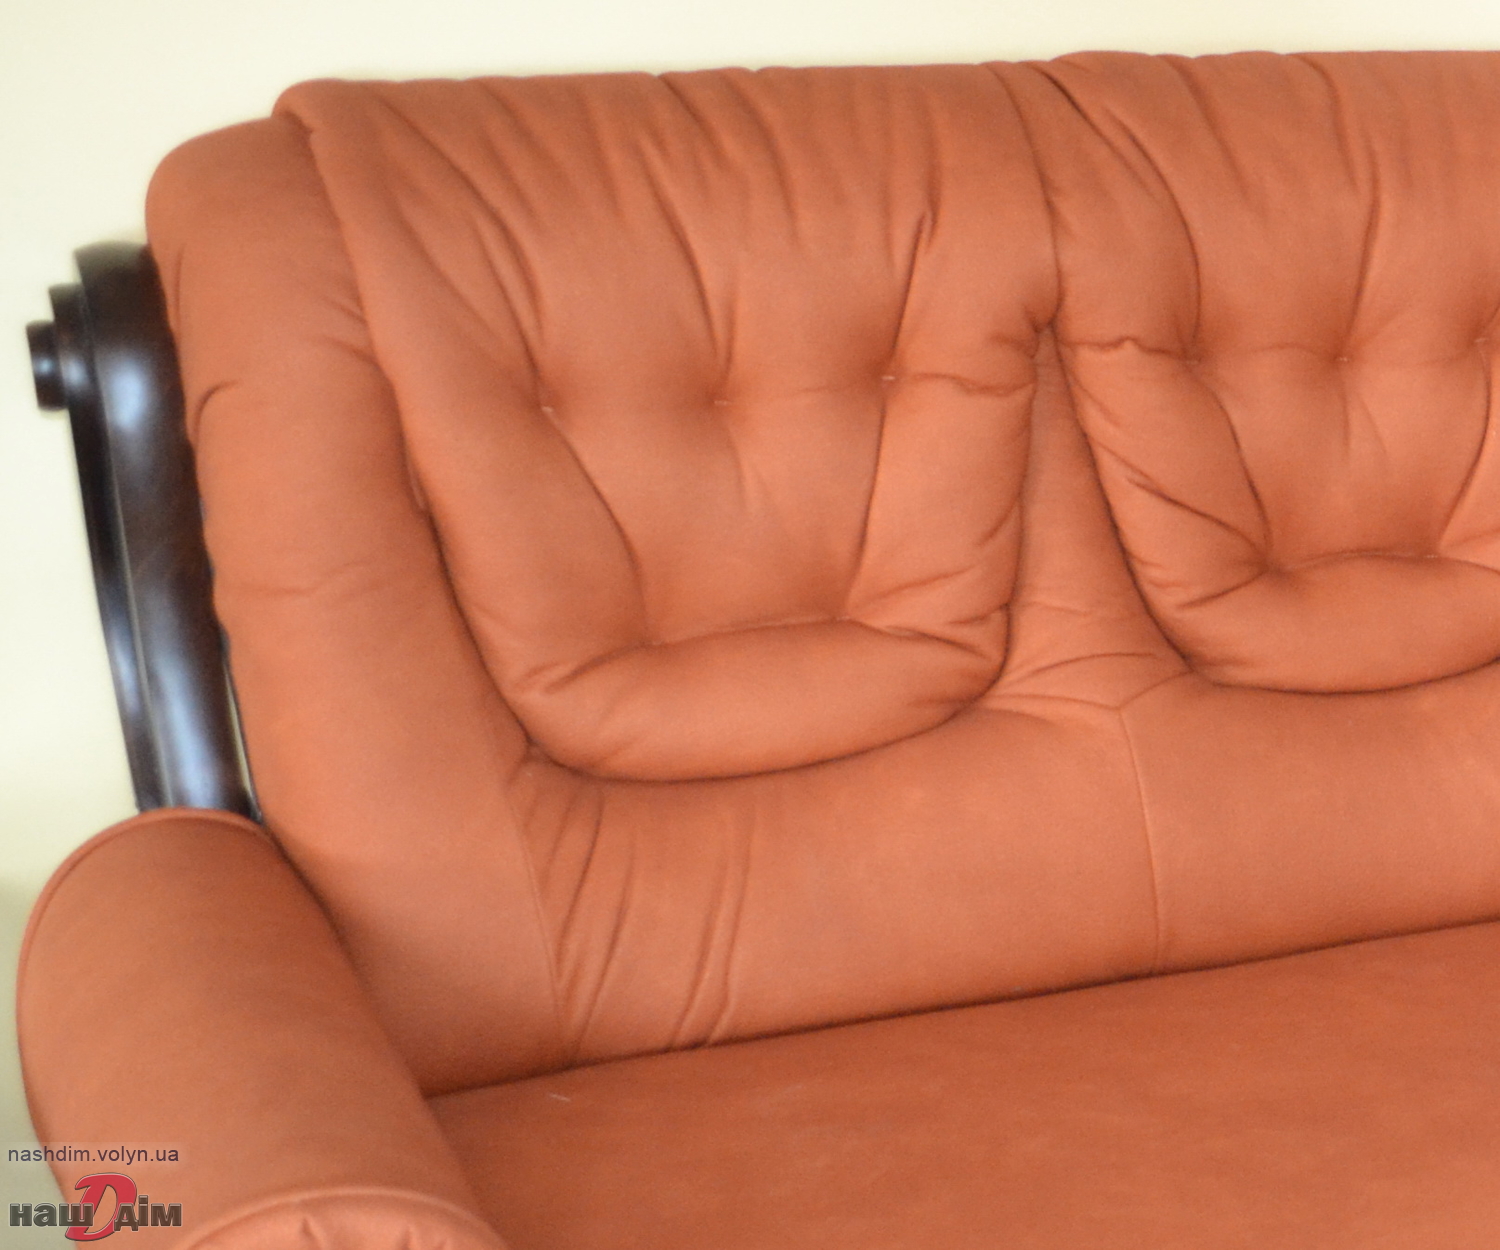  Річмонд кутовий диван від Даніро ID461-4 параметри та ціна